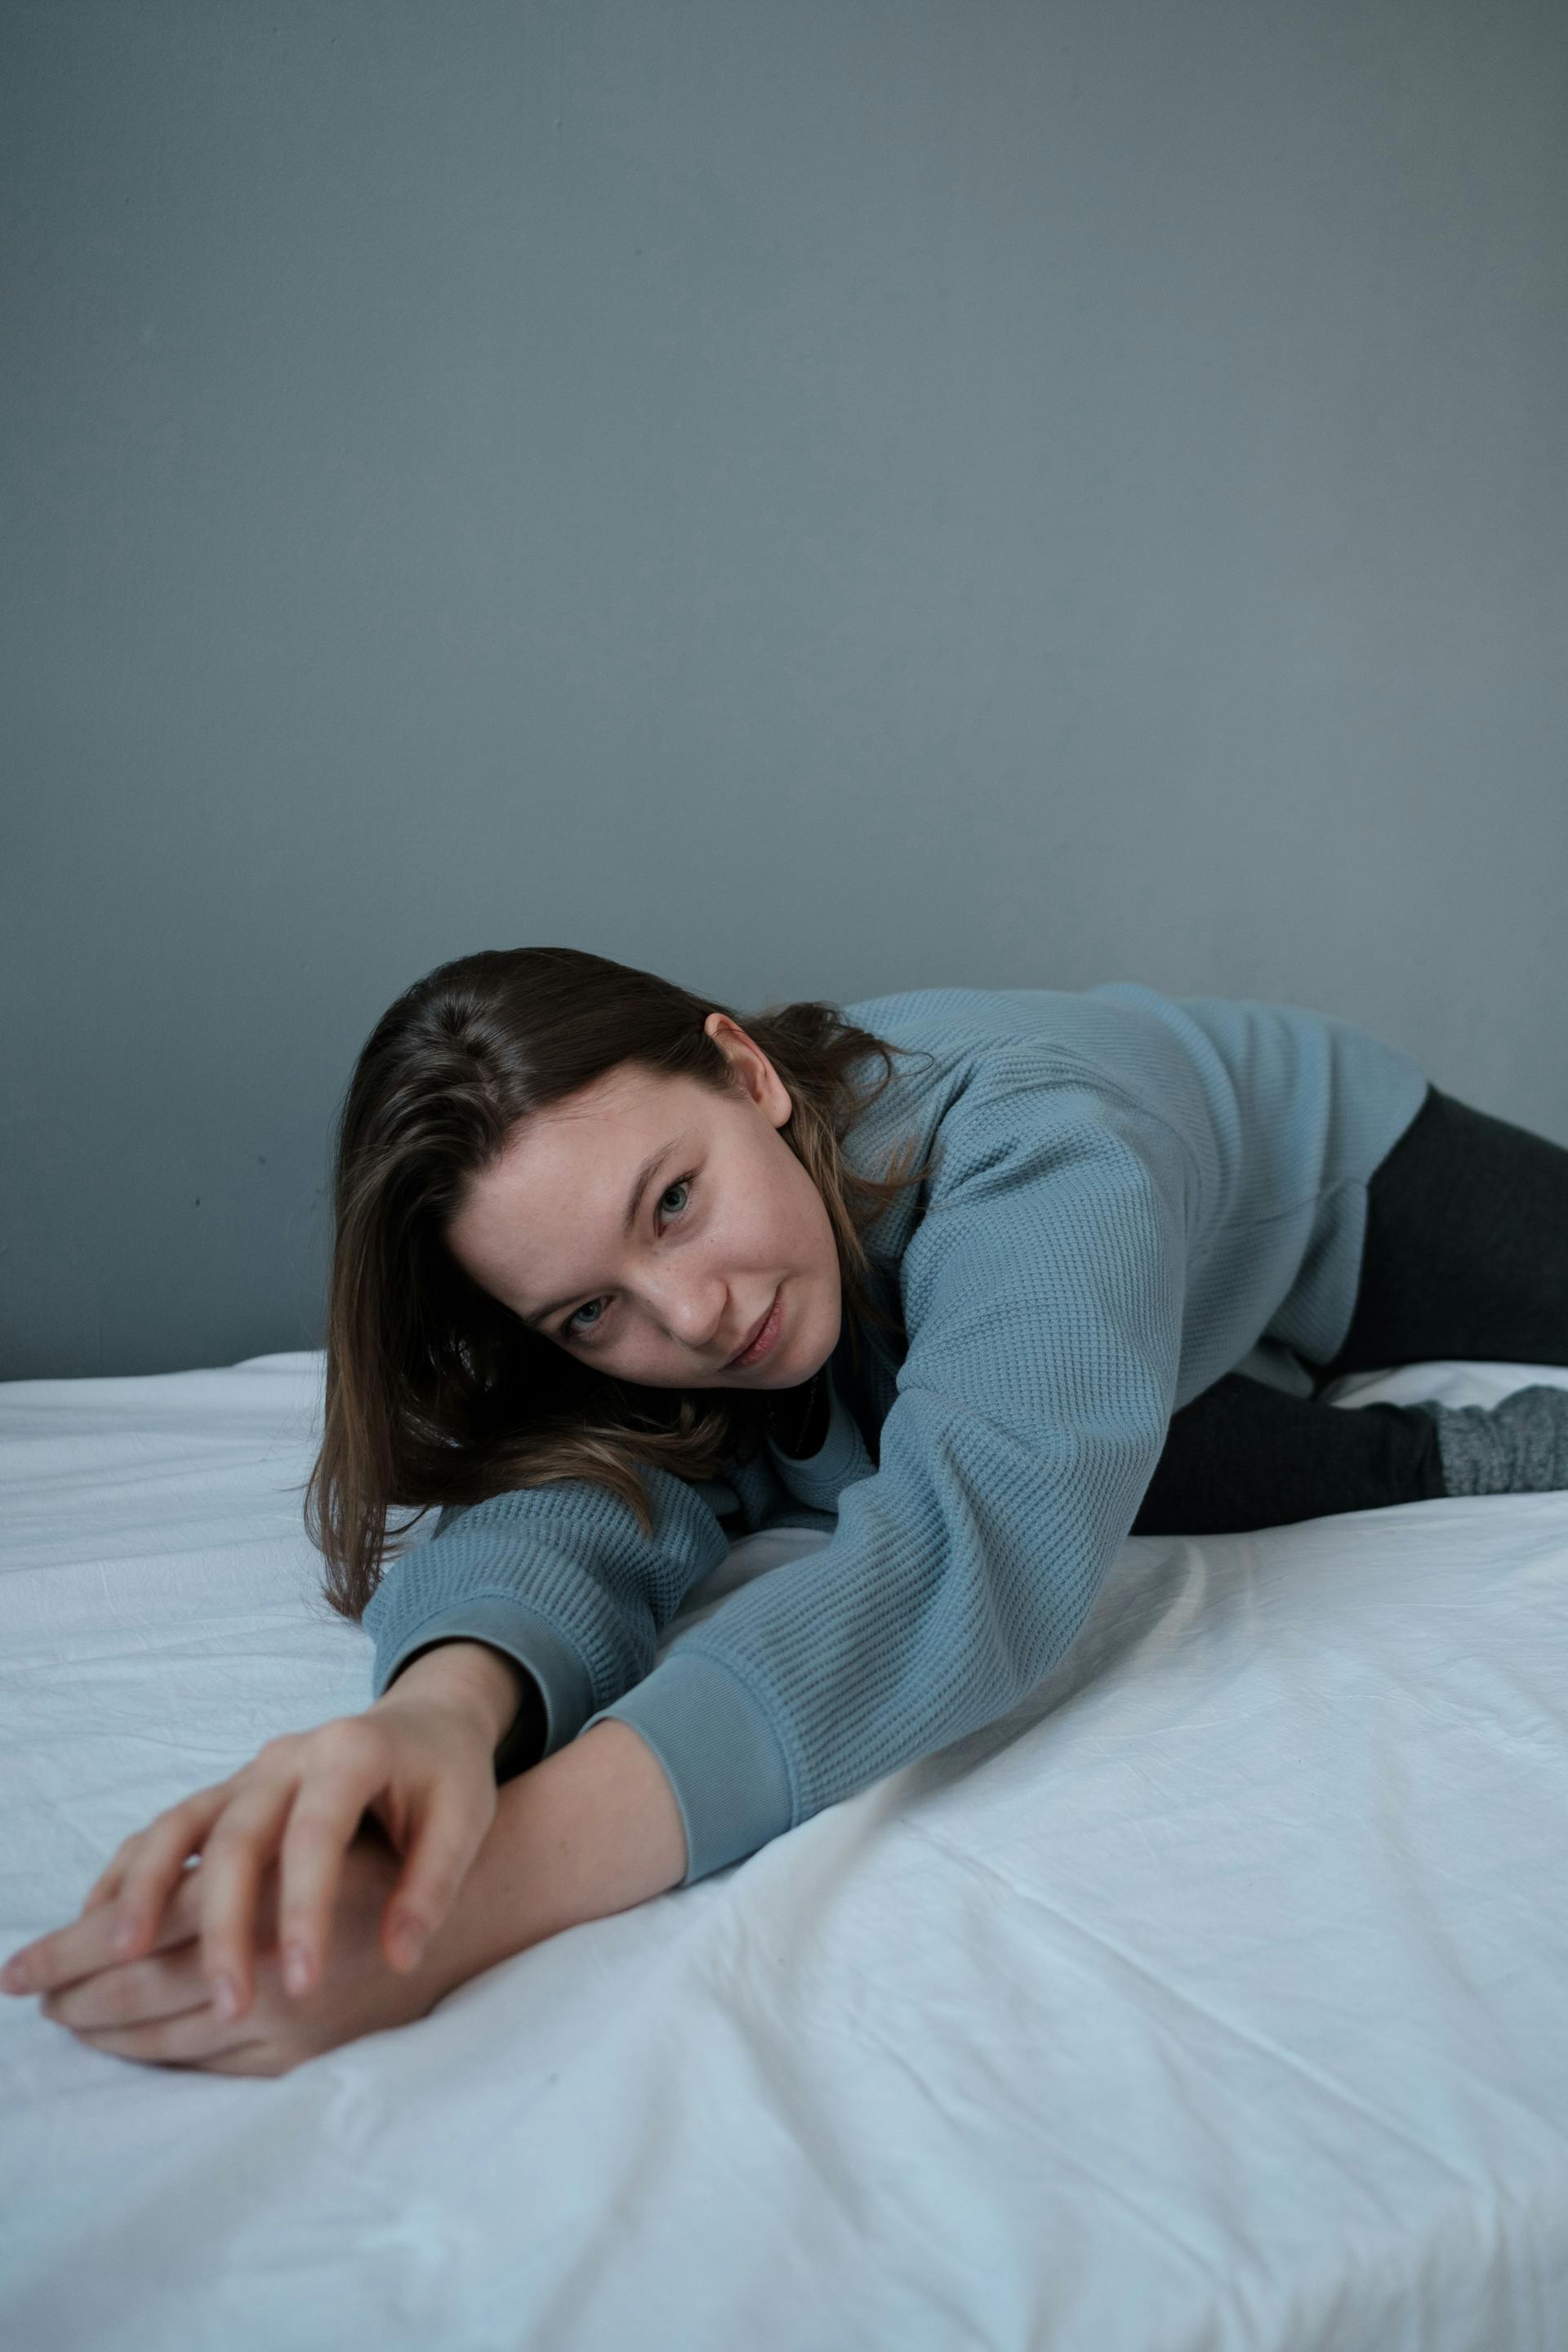 Una adolescente tumbada en una cama deshecha | Fuente: Pexels